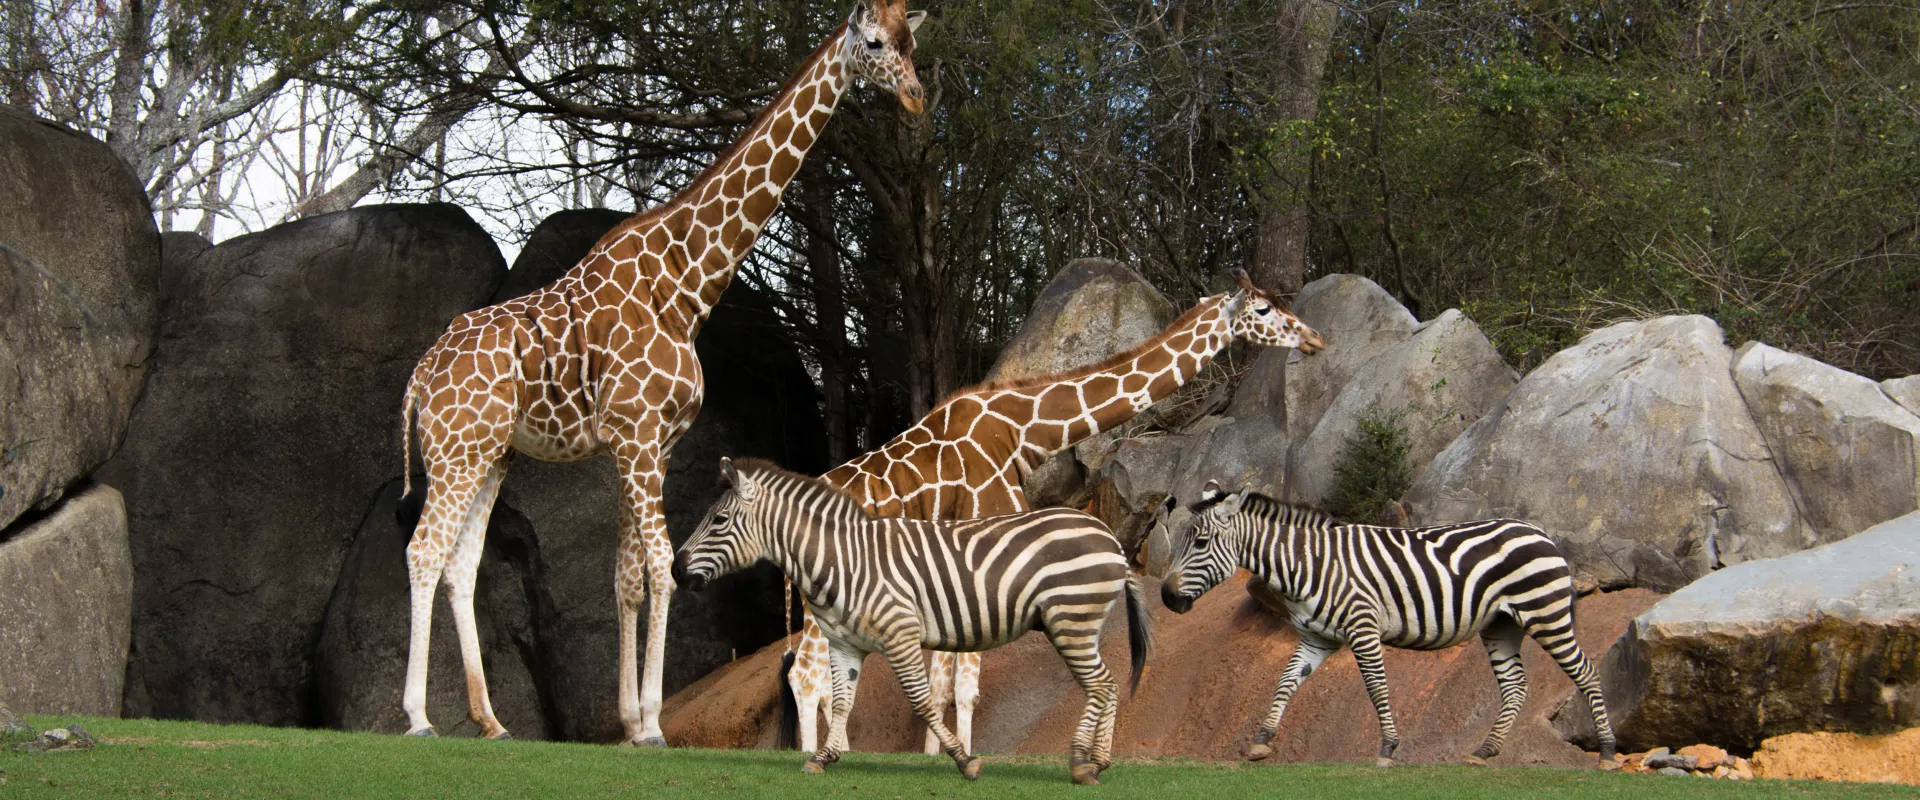 Zebra Ostrich and Giraffe Habitat